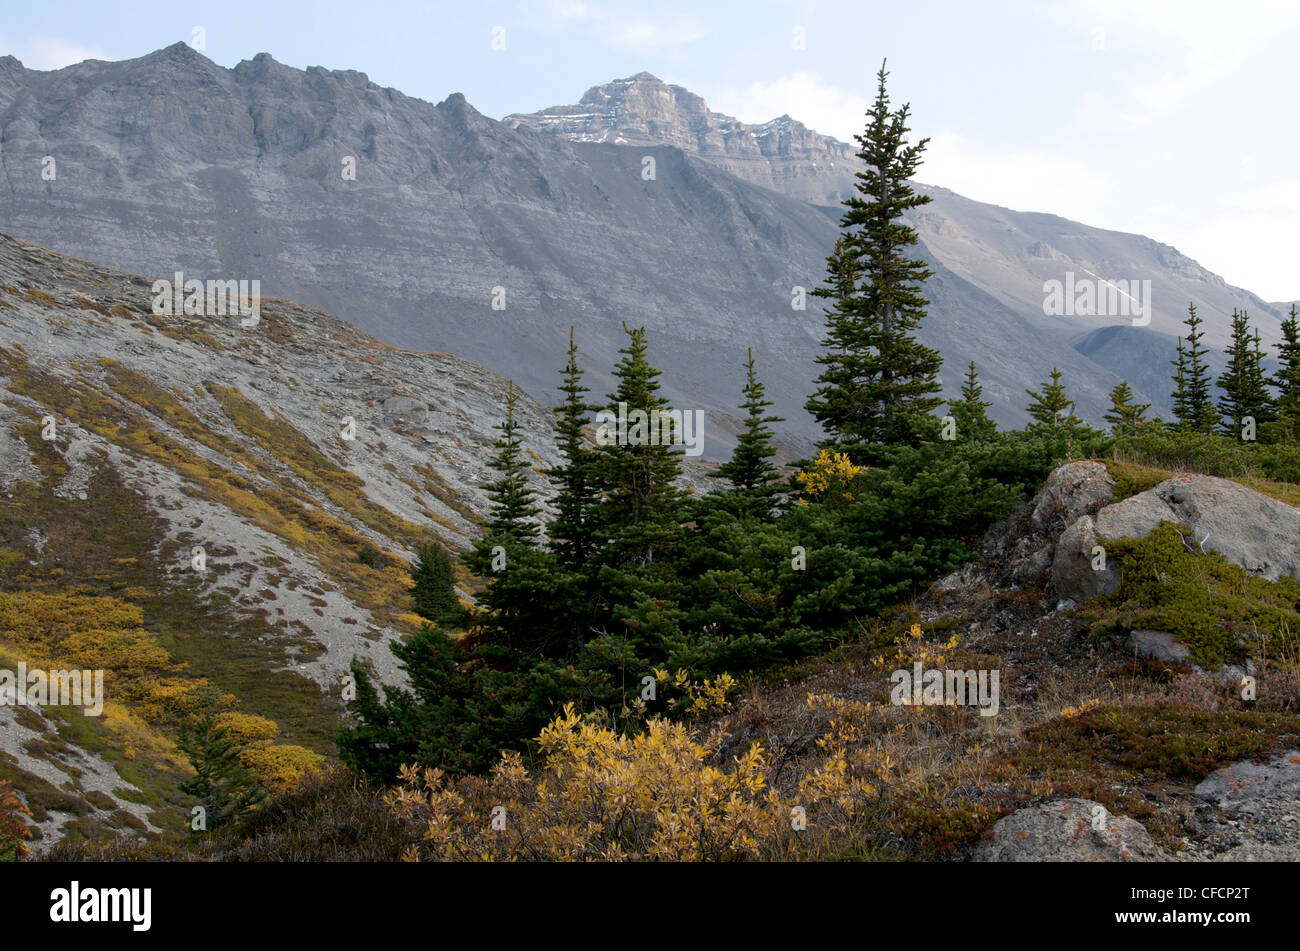 La végétation alpine Alpine (sapins), Rocky Mountains, Jasper National Park, Alberta, Canada Banque D'Images